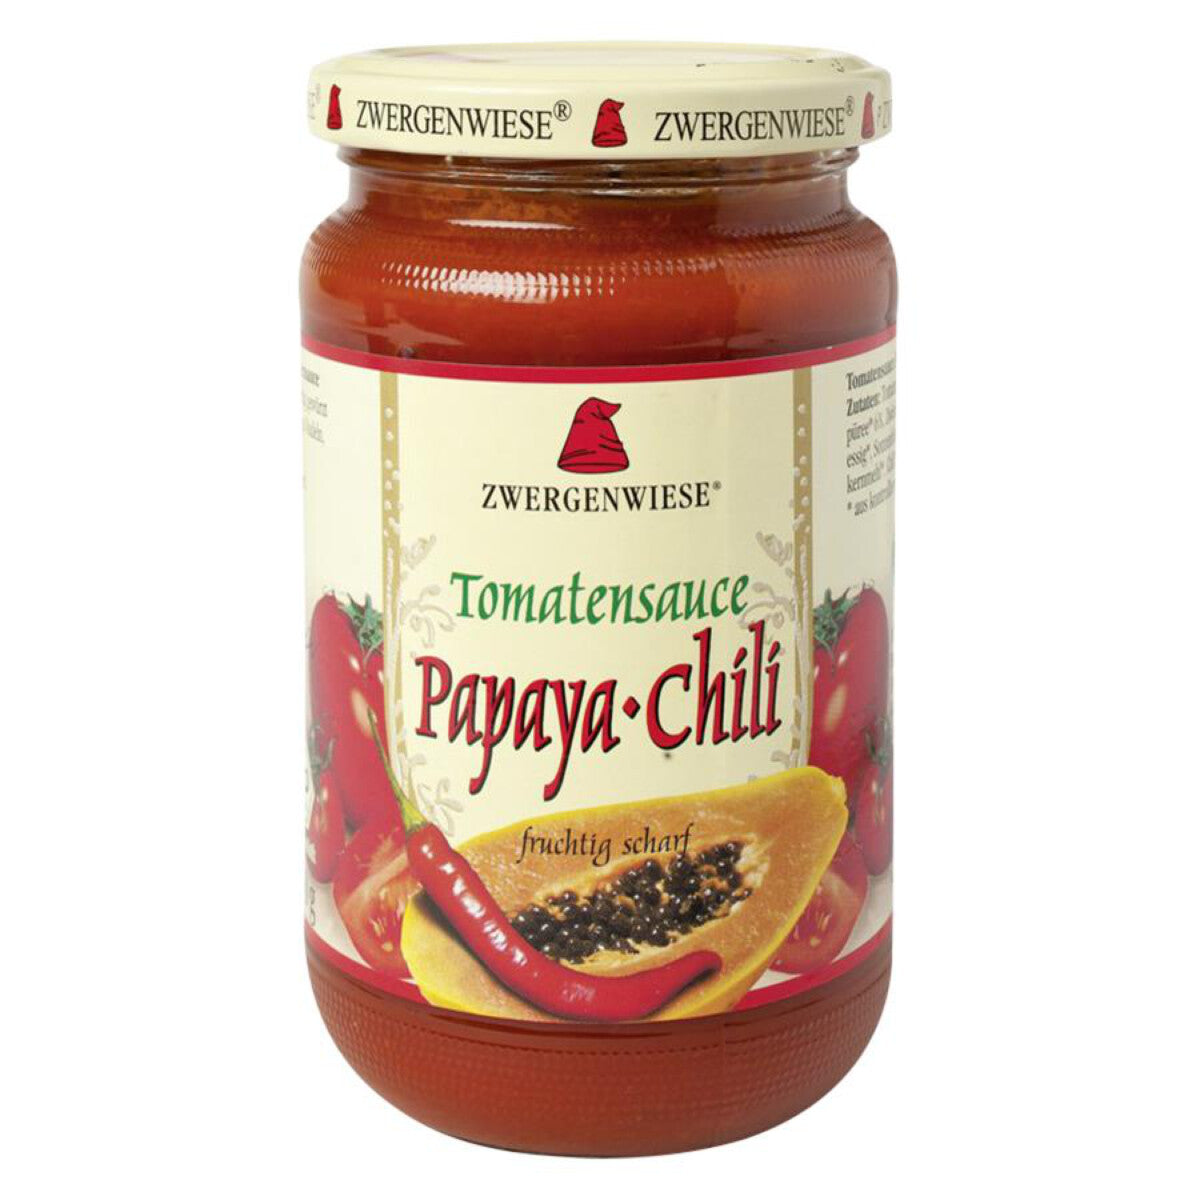 ZWERGENWIESE Tomatensauce Papaya-Chili - 350g